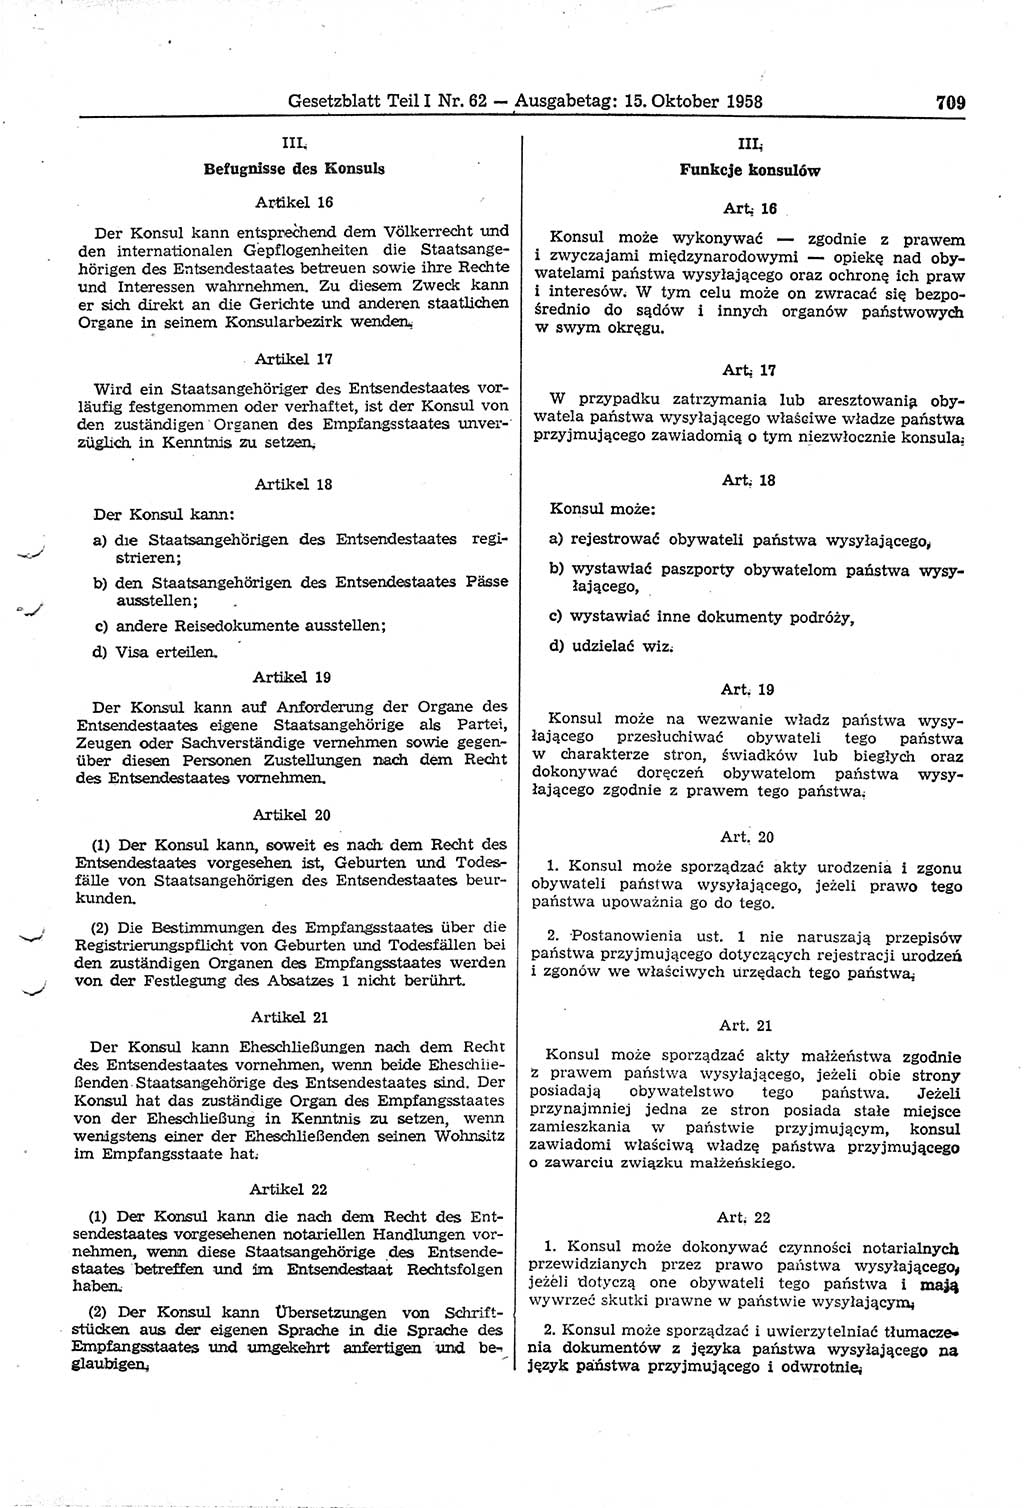 Gesetzblatt (GBl.) der Deutschen Demokratischen Republik (DDR) Teil Ⅰ 1958, Seite 709 (GBl. DDR Ⅰ 1958, S. 709)